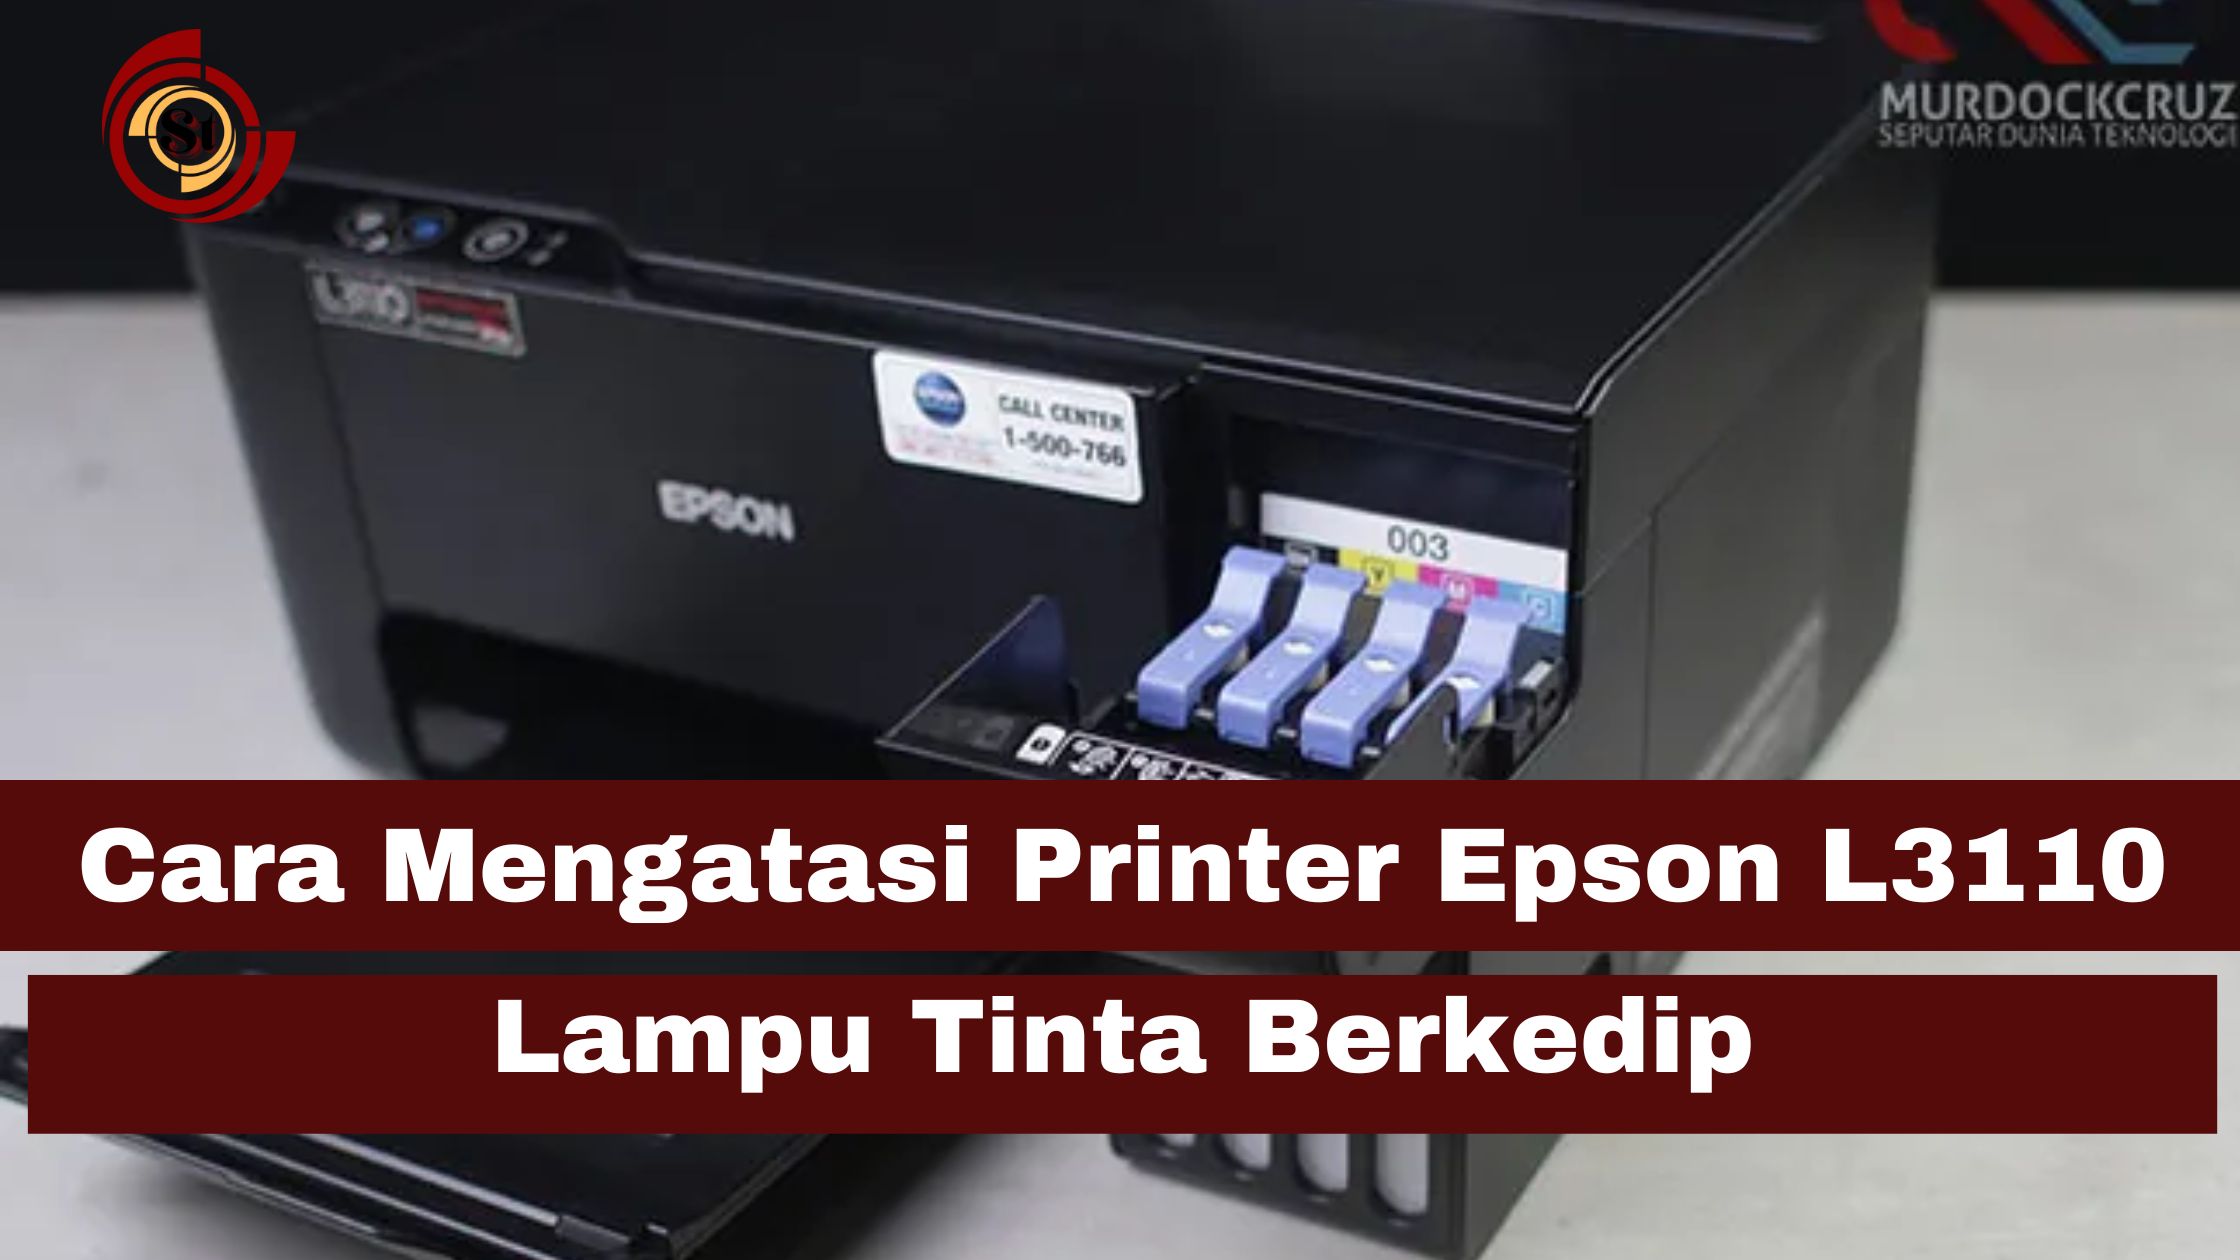 Cara Mengatasi Printer Epson L3110 Lampu Tinta Berkedip